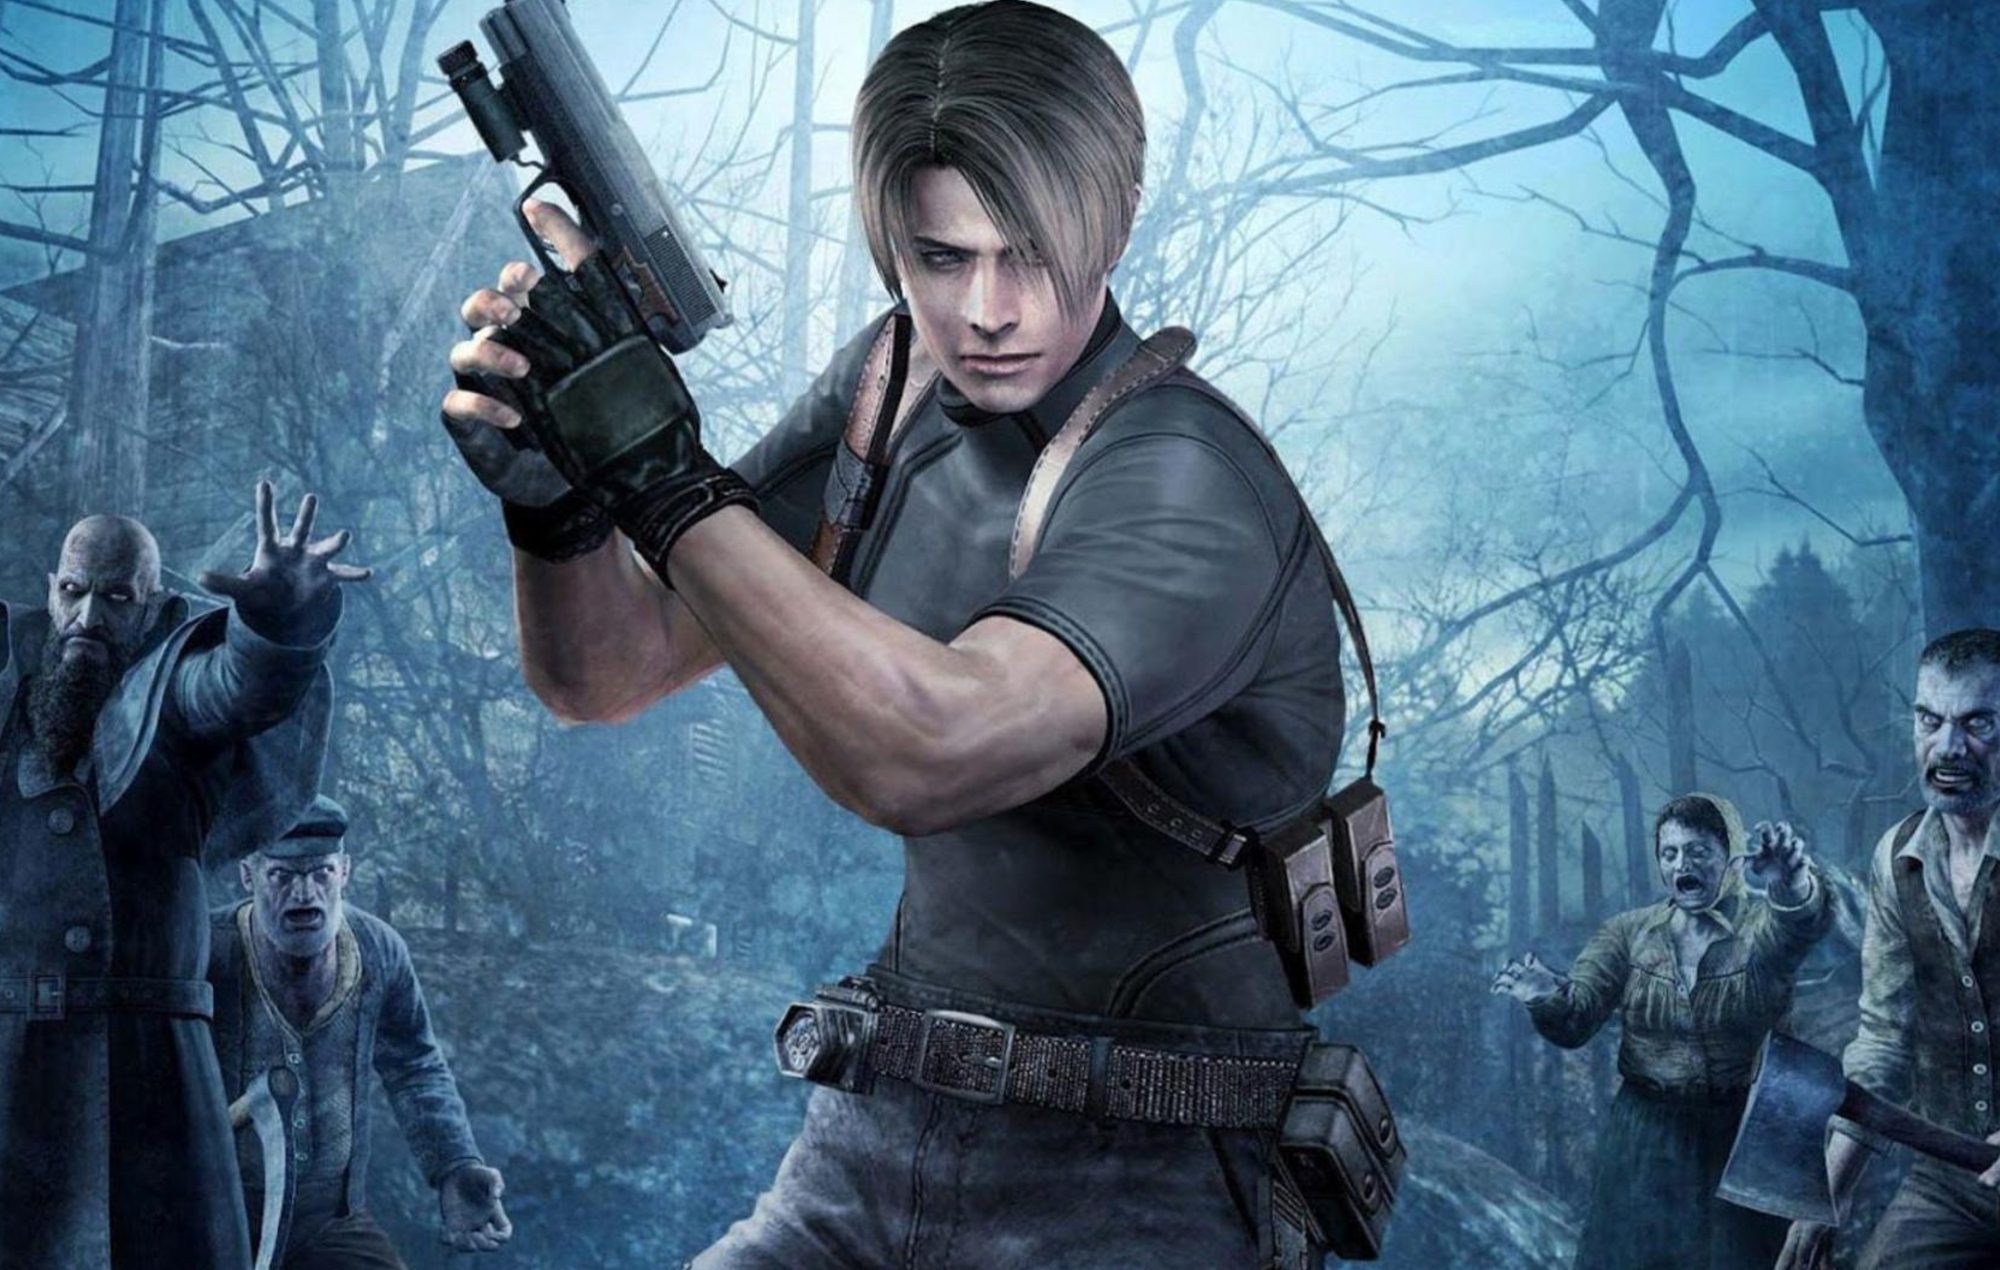 Resident Evil 4 VR review